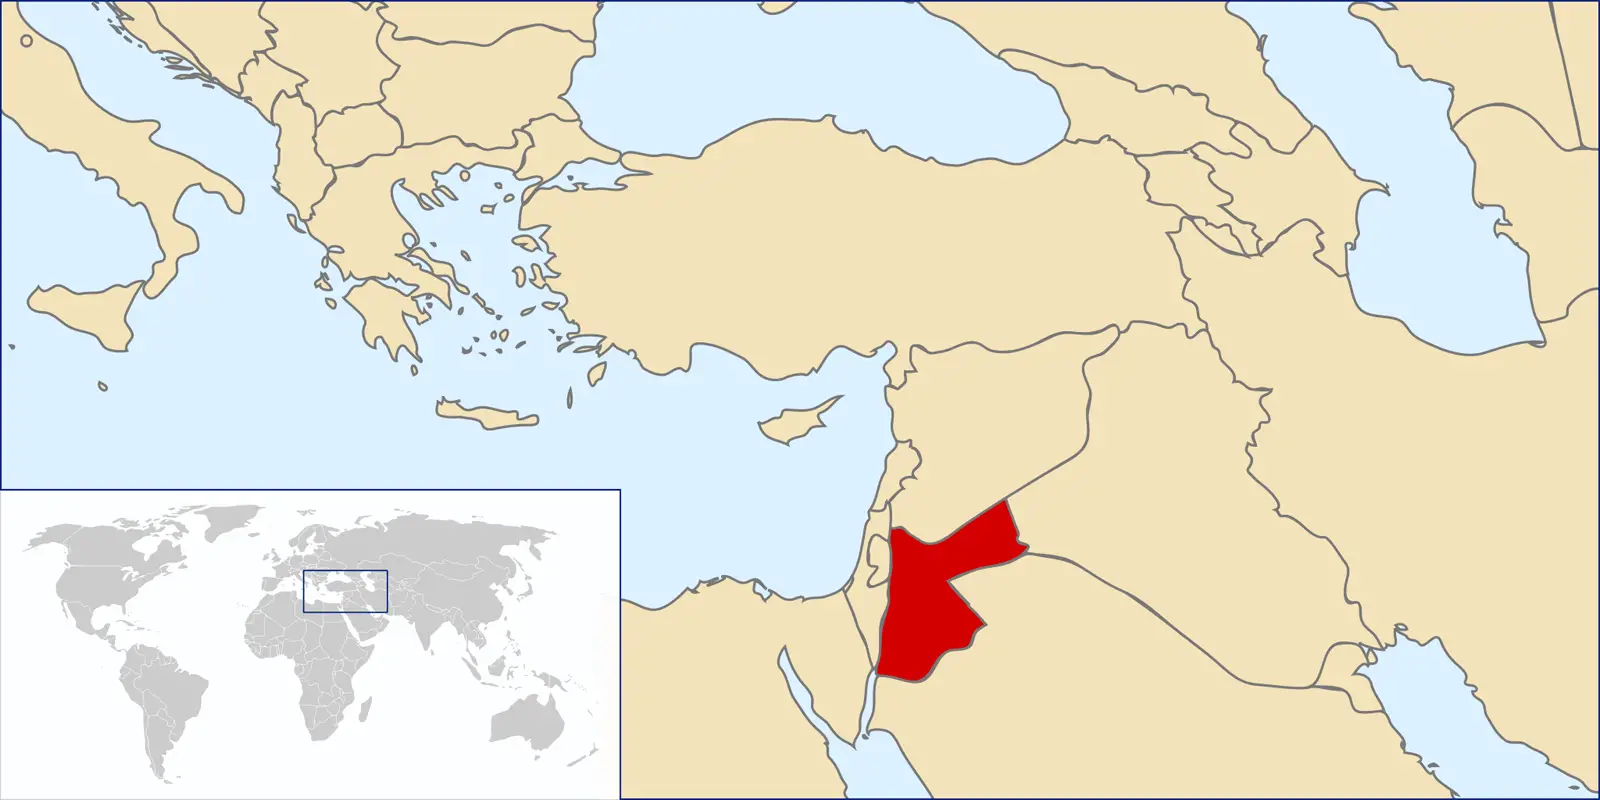 Location of Jordan